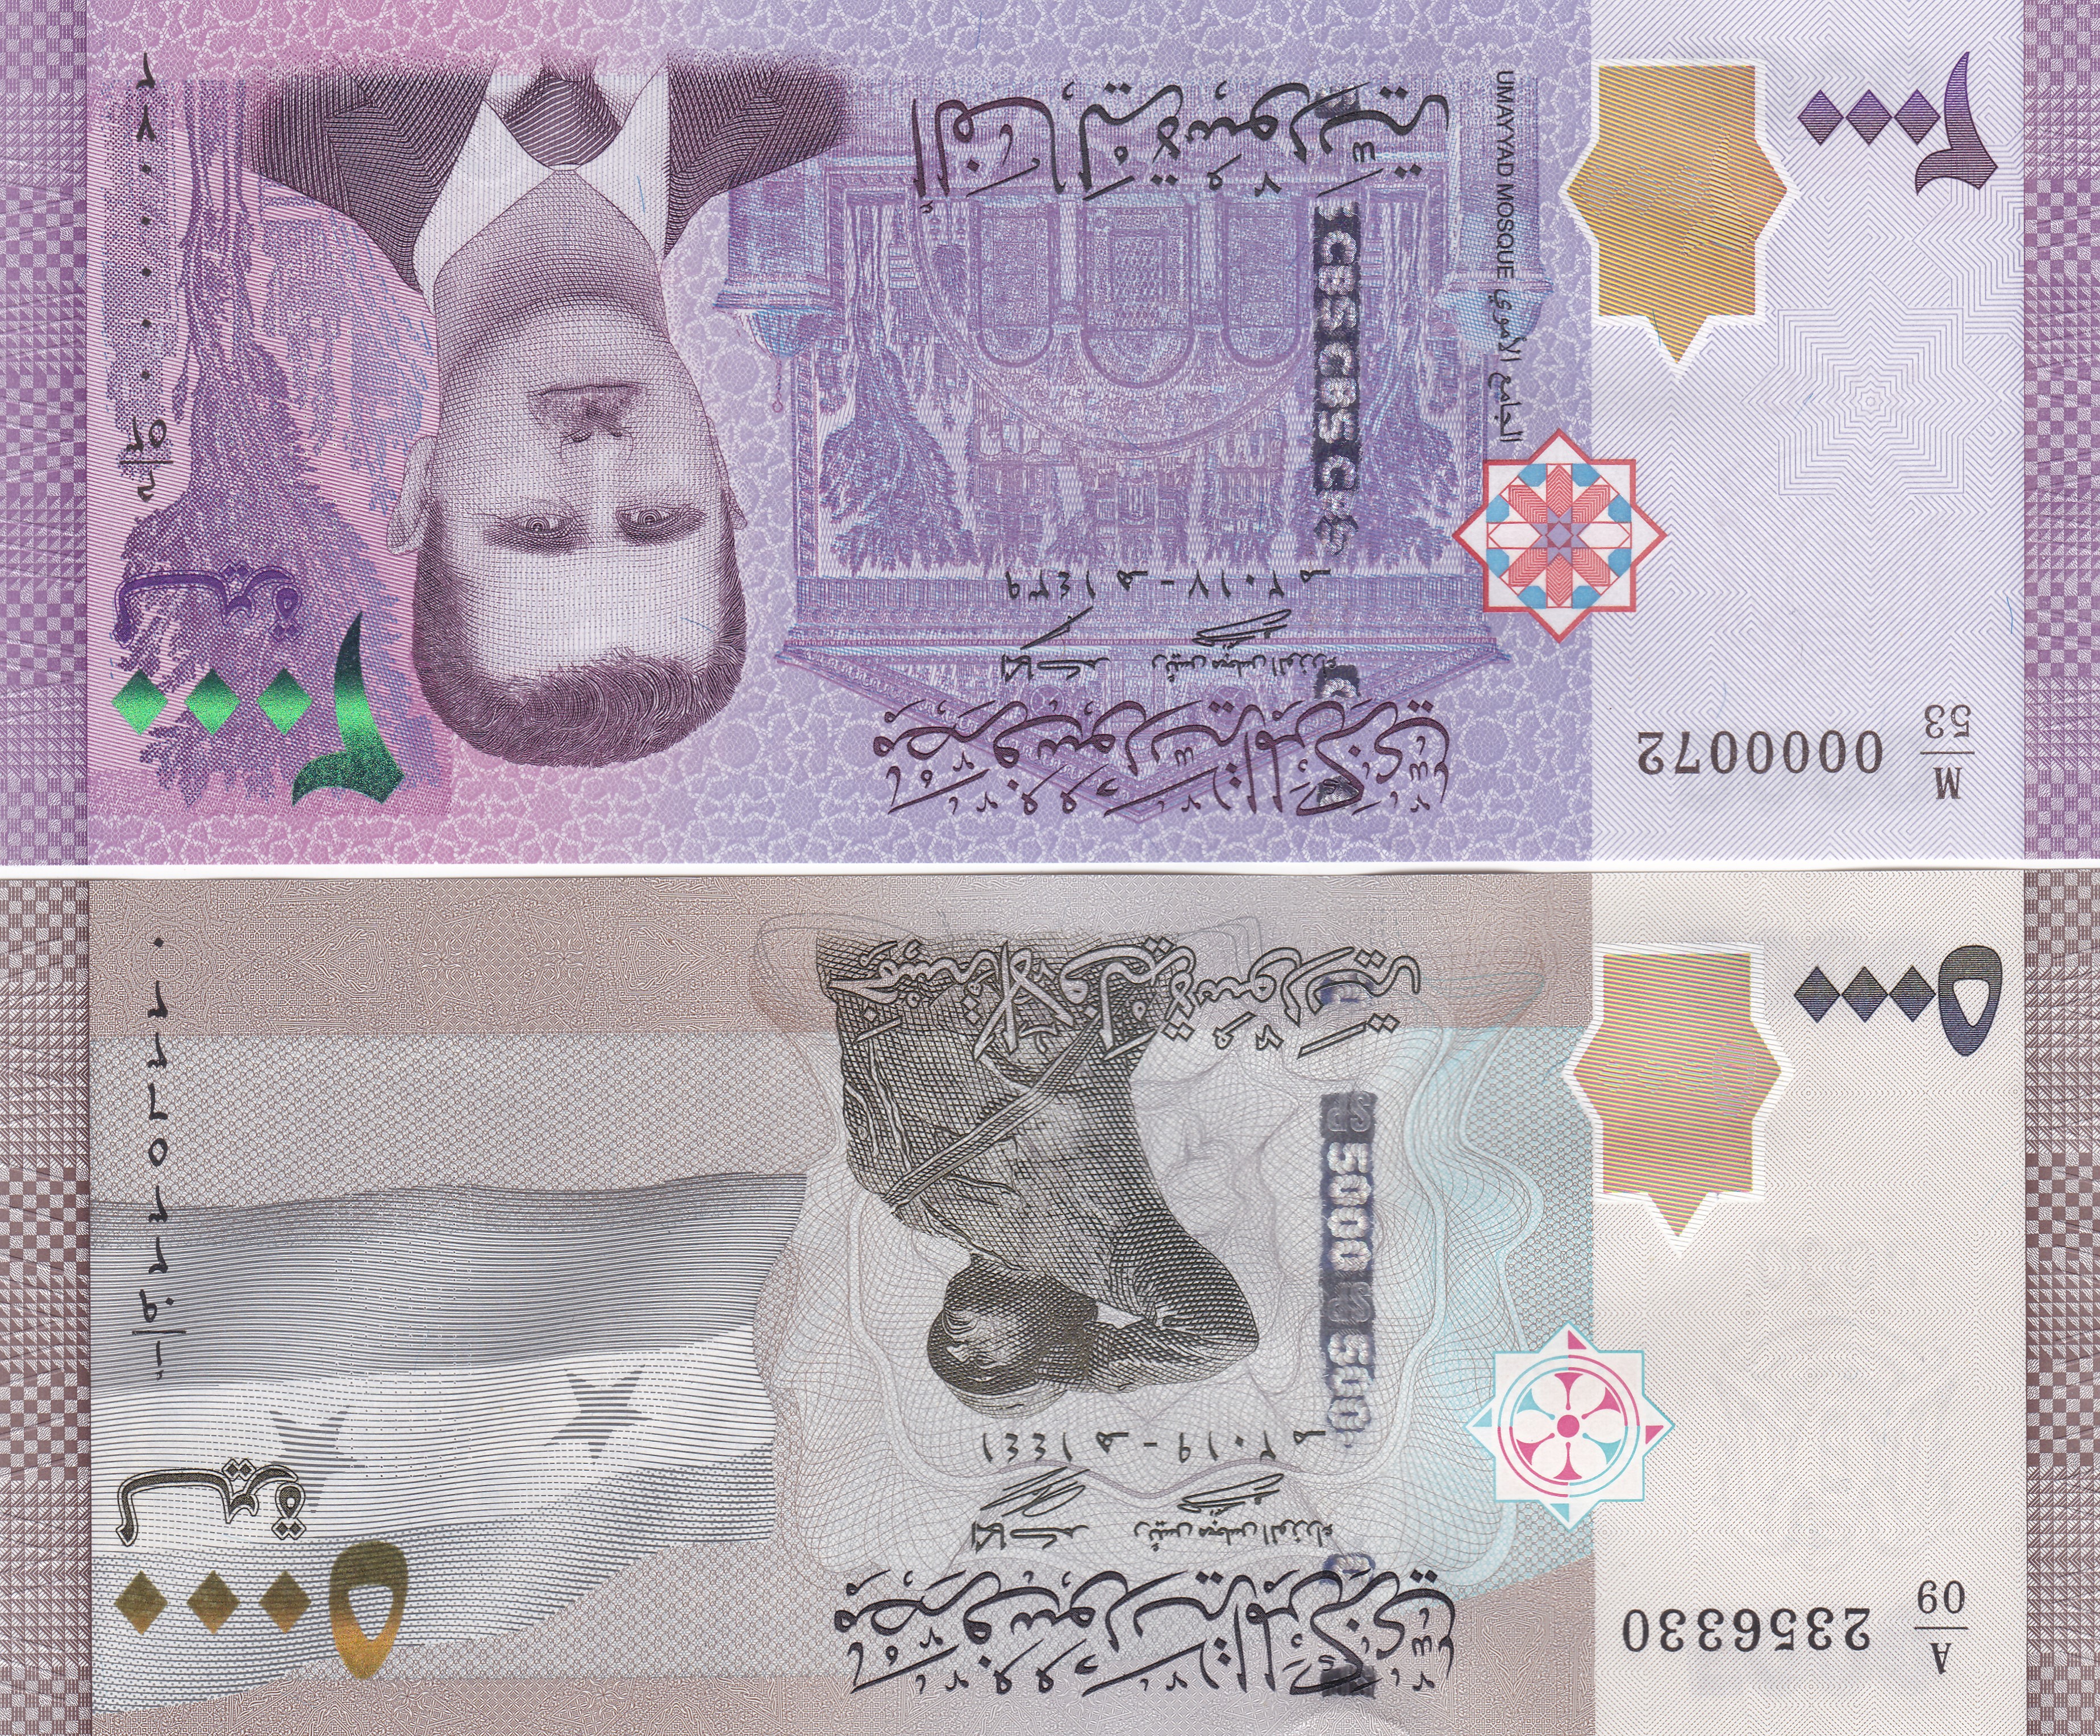 这张钞票设计风格和防伪特征也同2000叙利亚镑纸币类似